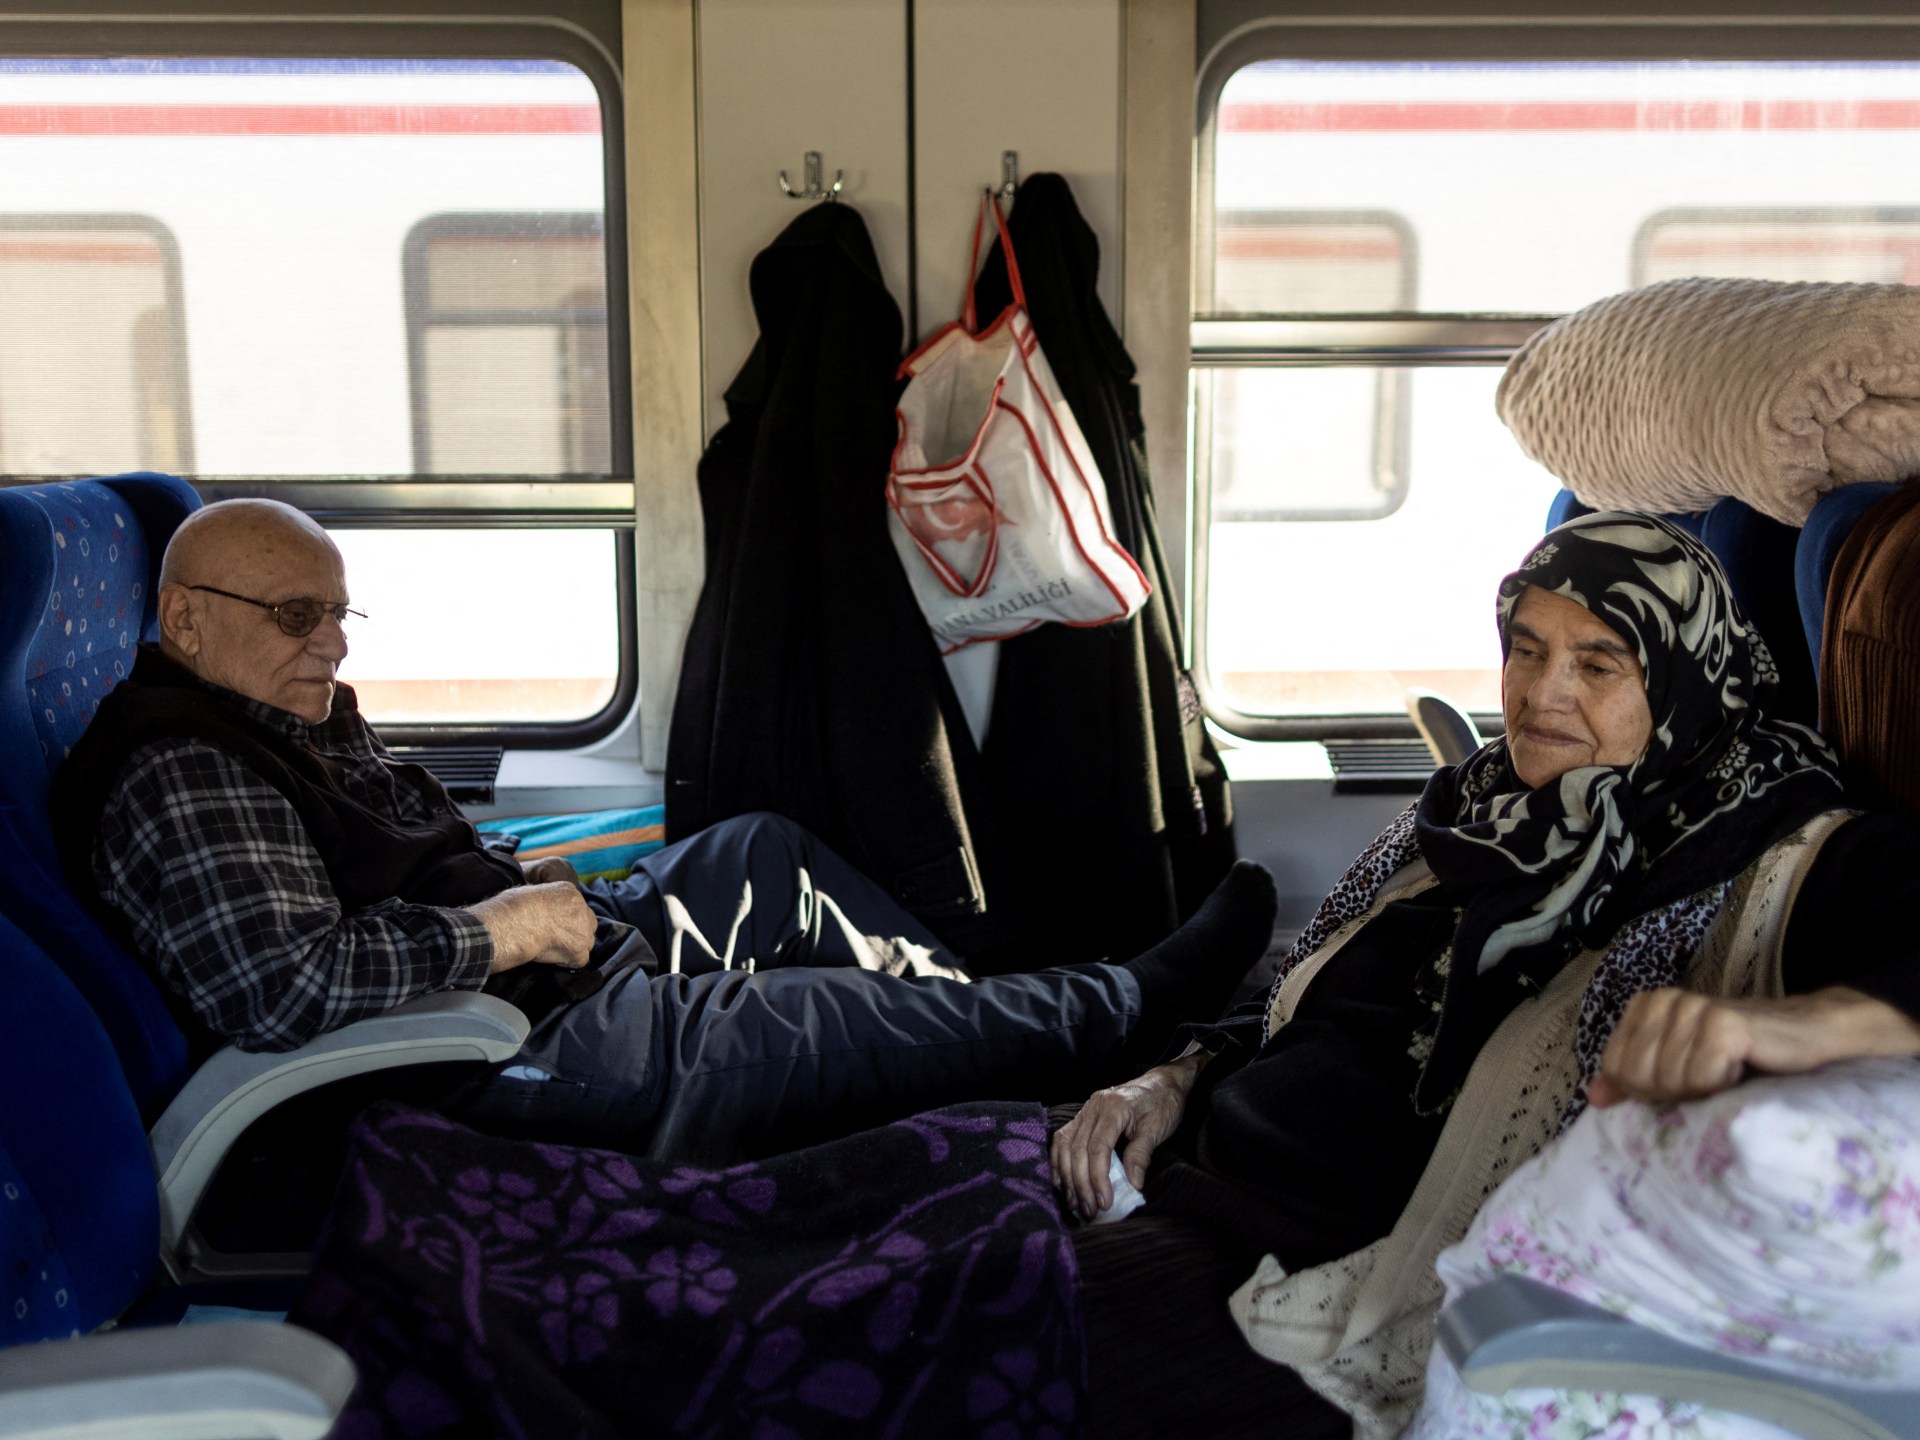 Keluarga Turki berlindung di kereta setelah gempa besar |  Berita gempa Turki-Suriah